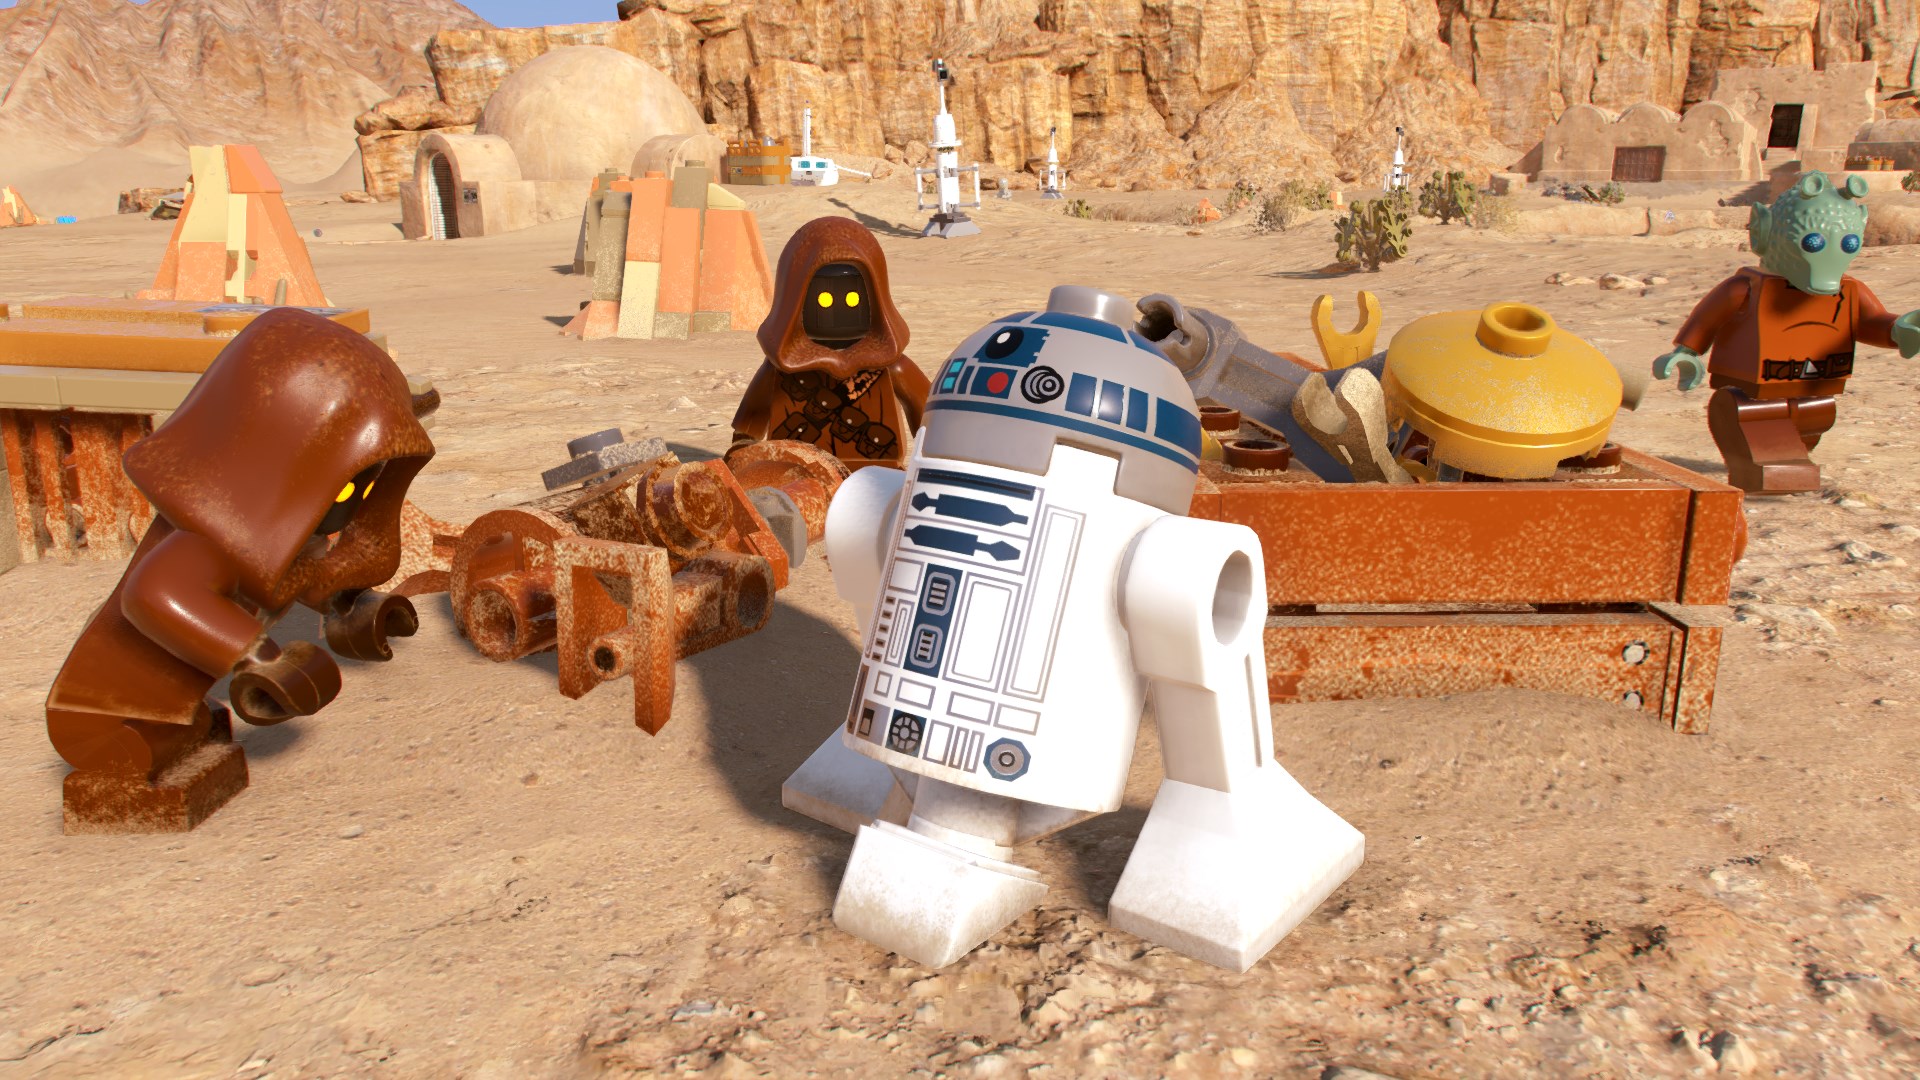 LEGO Star Wars: The Skywalker Saga - показали новый геймплей и объявили дату релиза